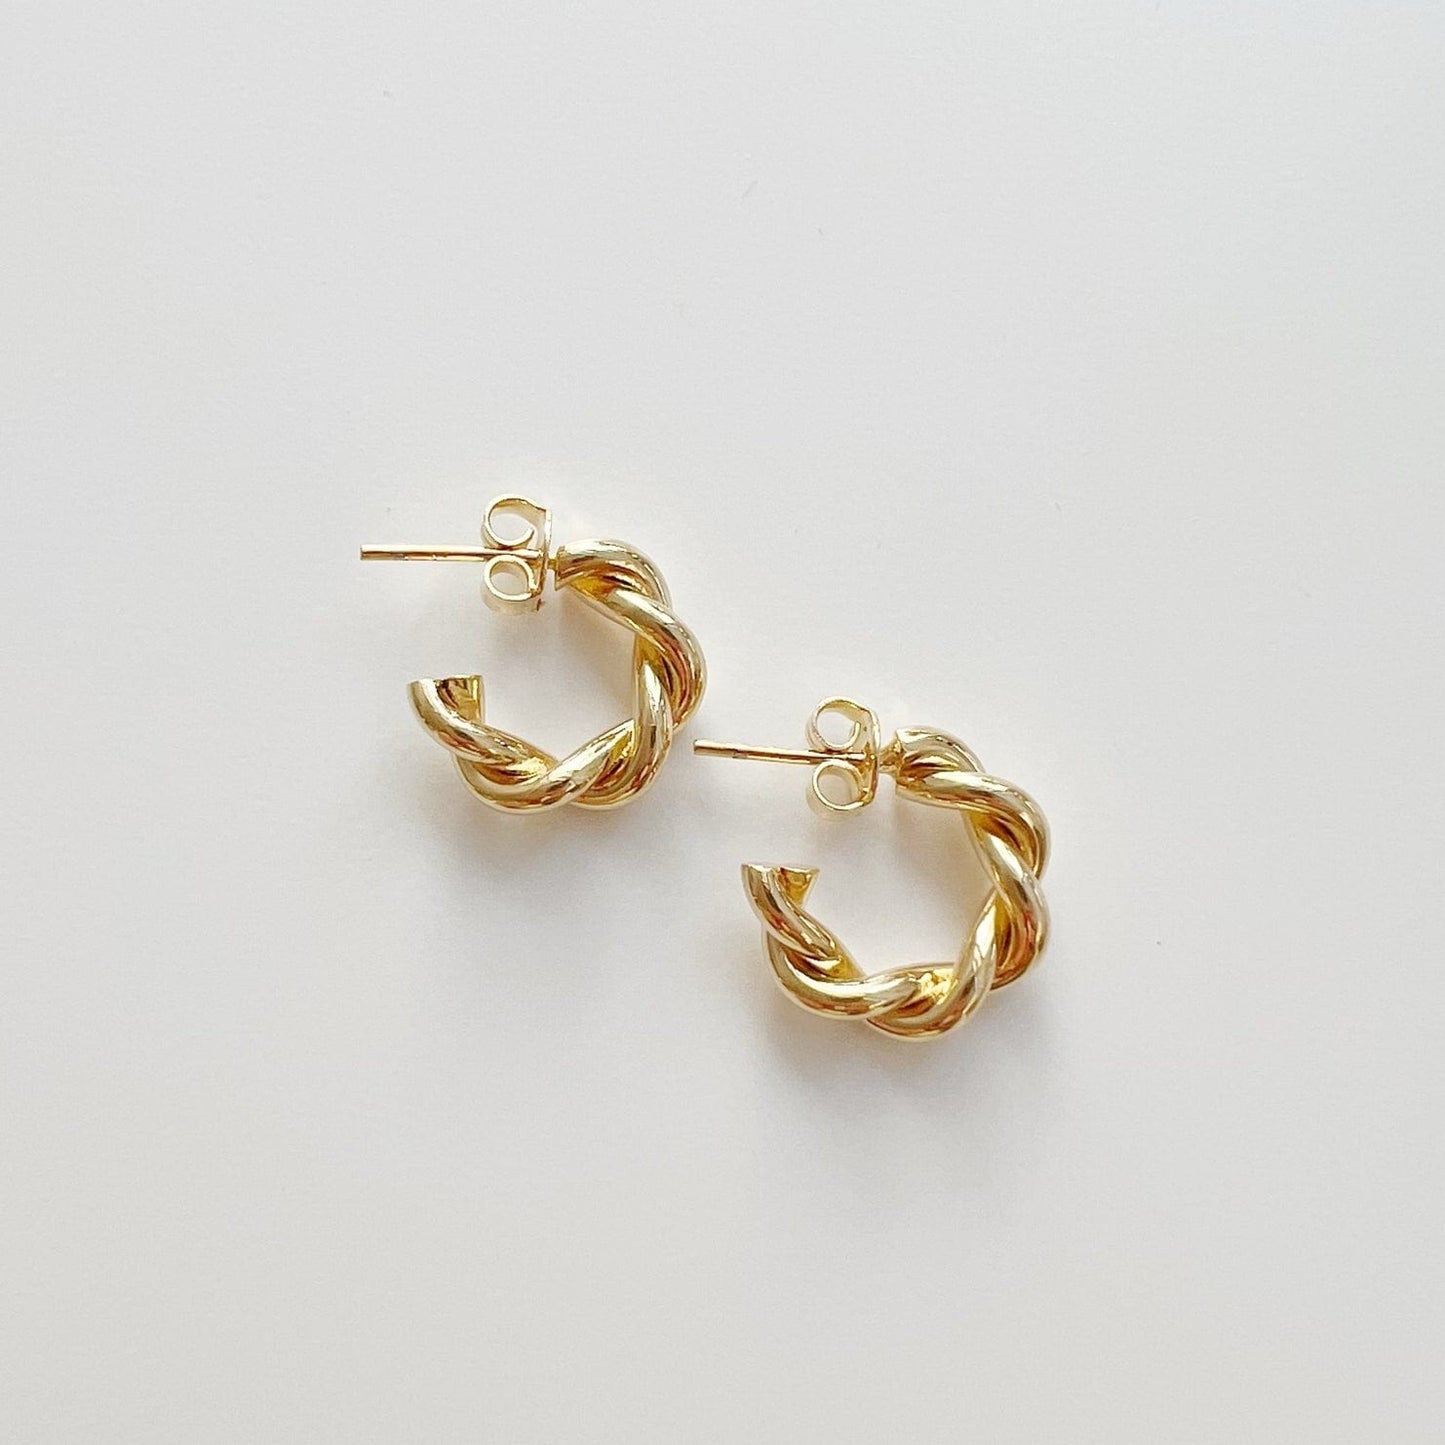 EAR-GF Lily Twist Hoops Earrings Gold Filled